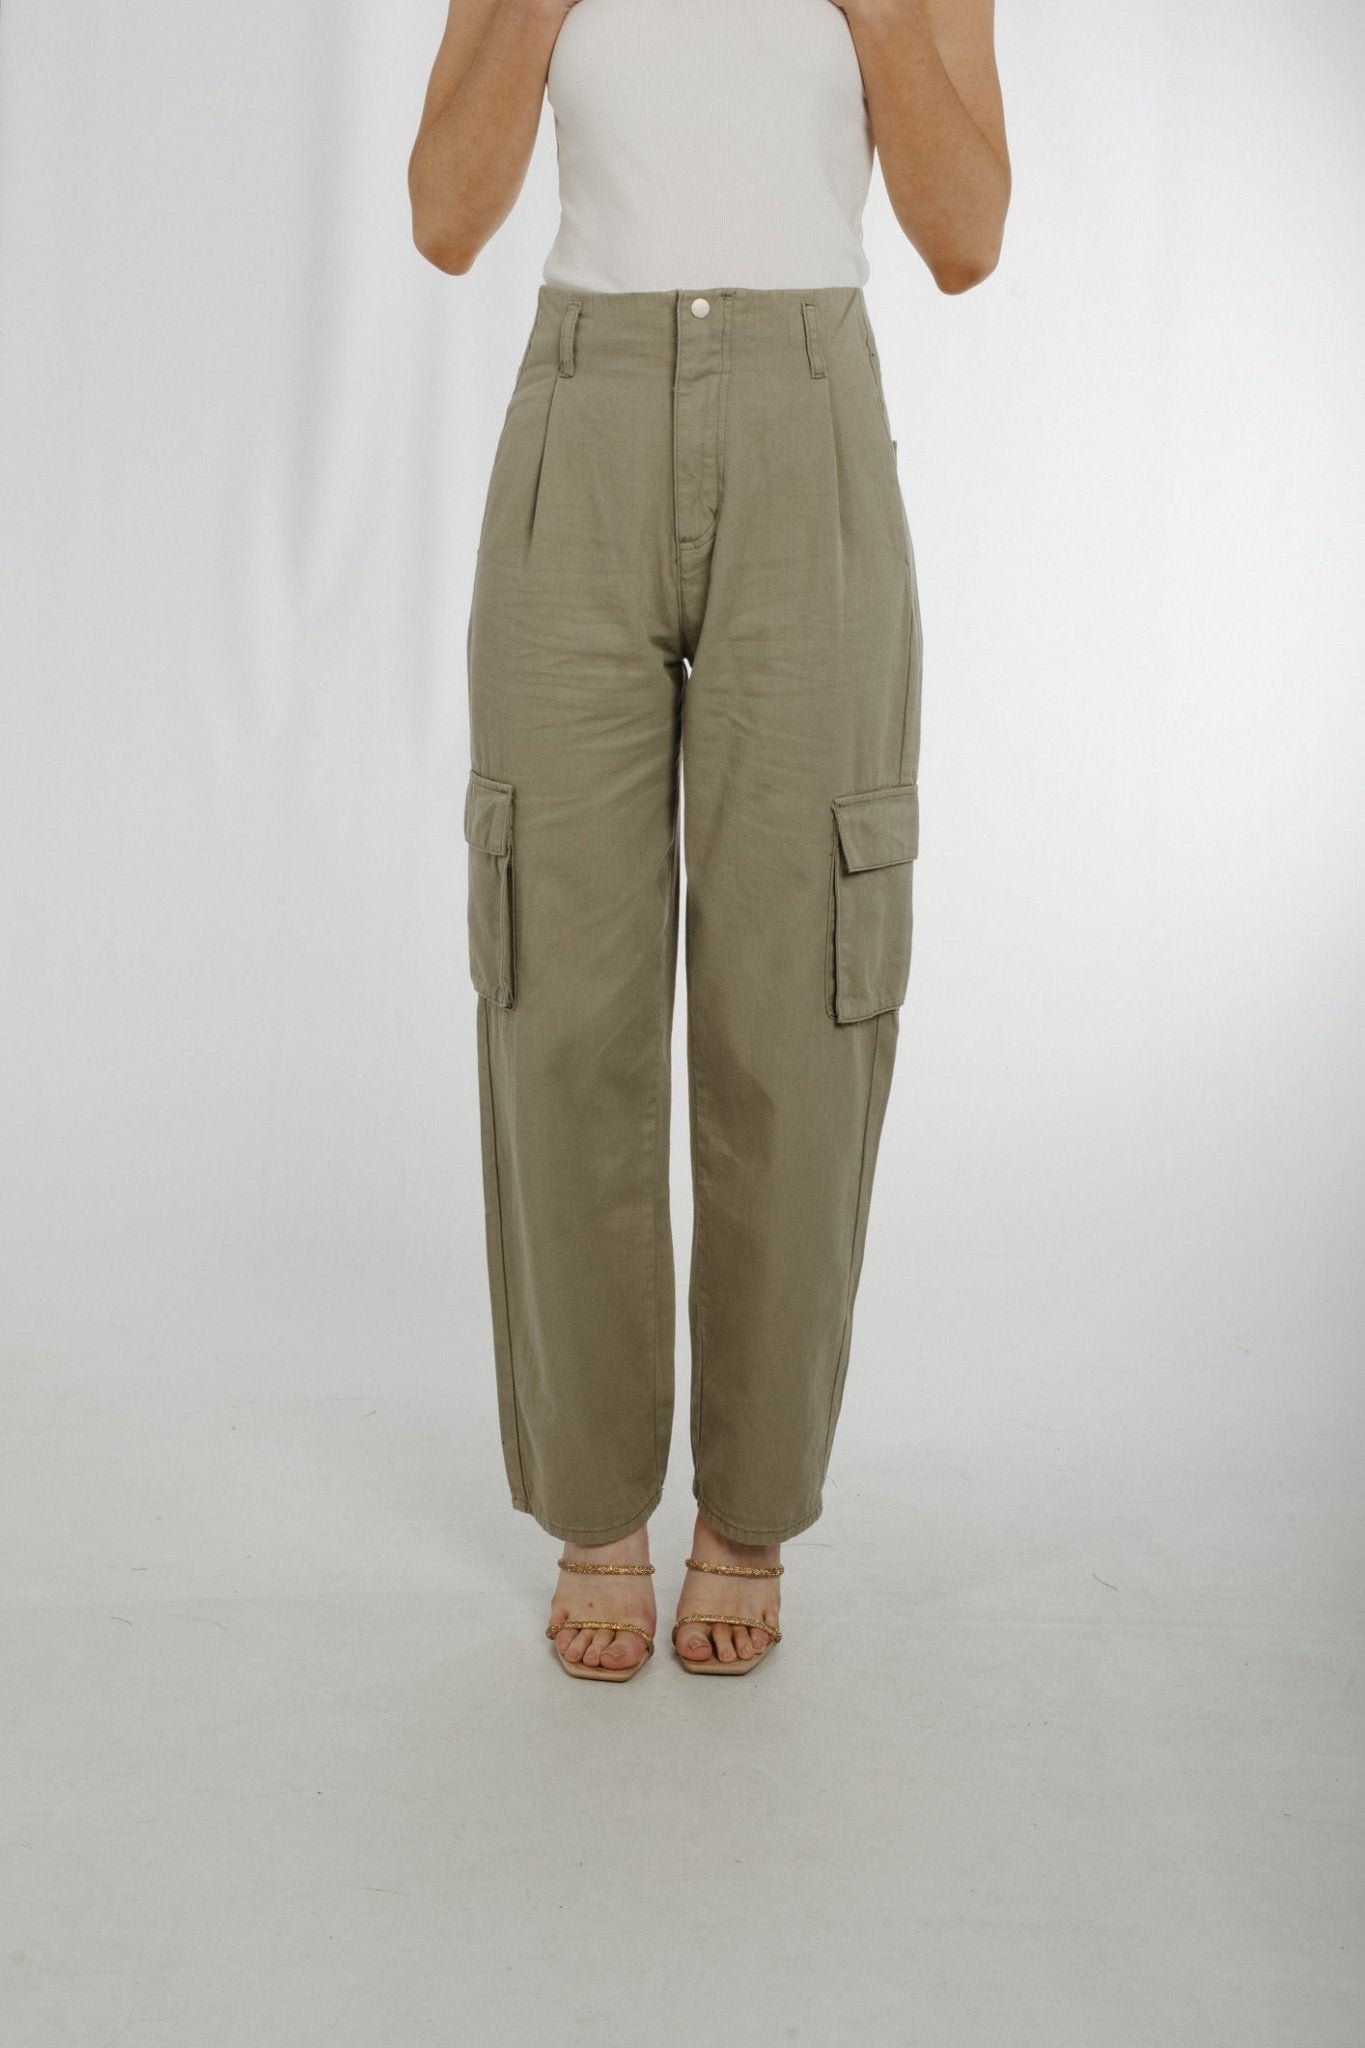 Summer Cargo Trousers In Khaki - The Walk in Wardrobe